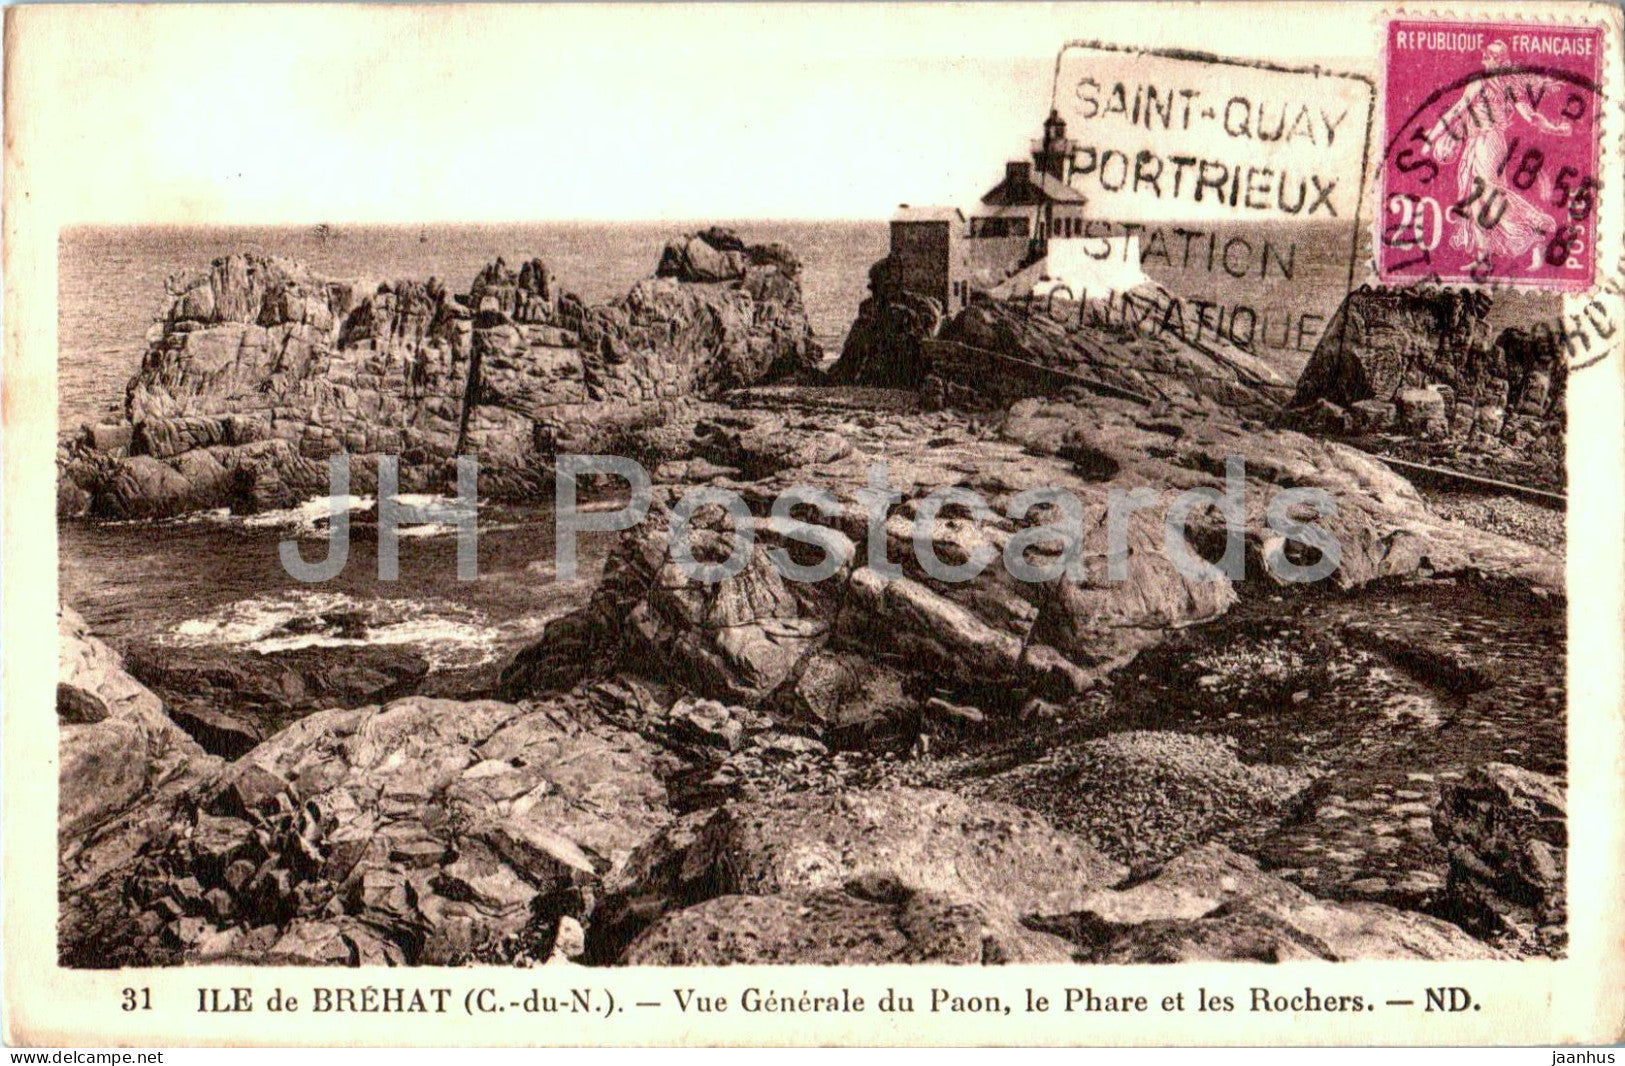 Ile de Brehat - Vue Generale du Paon - Le Phare et les Rochers - lighthouse - 31 - old postcard - France - used - JH Postcards